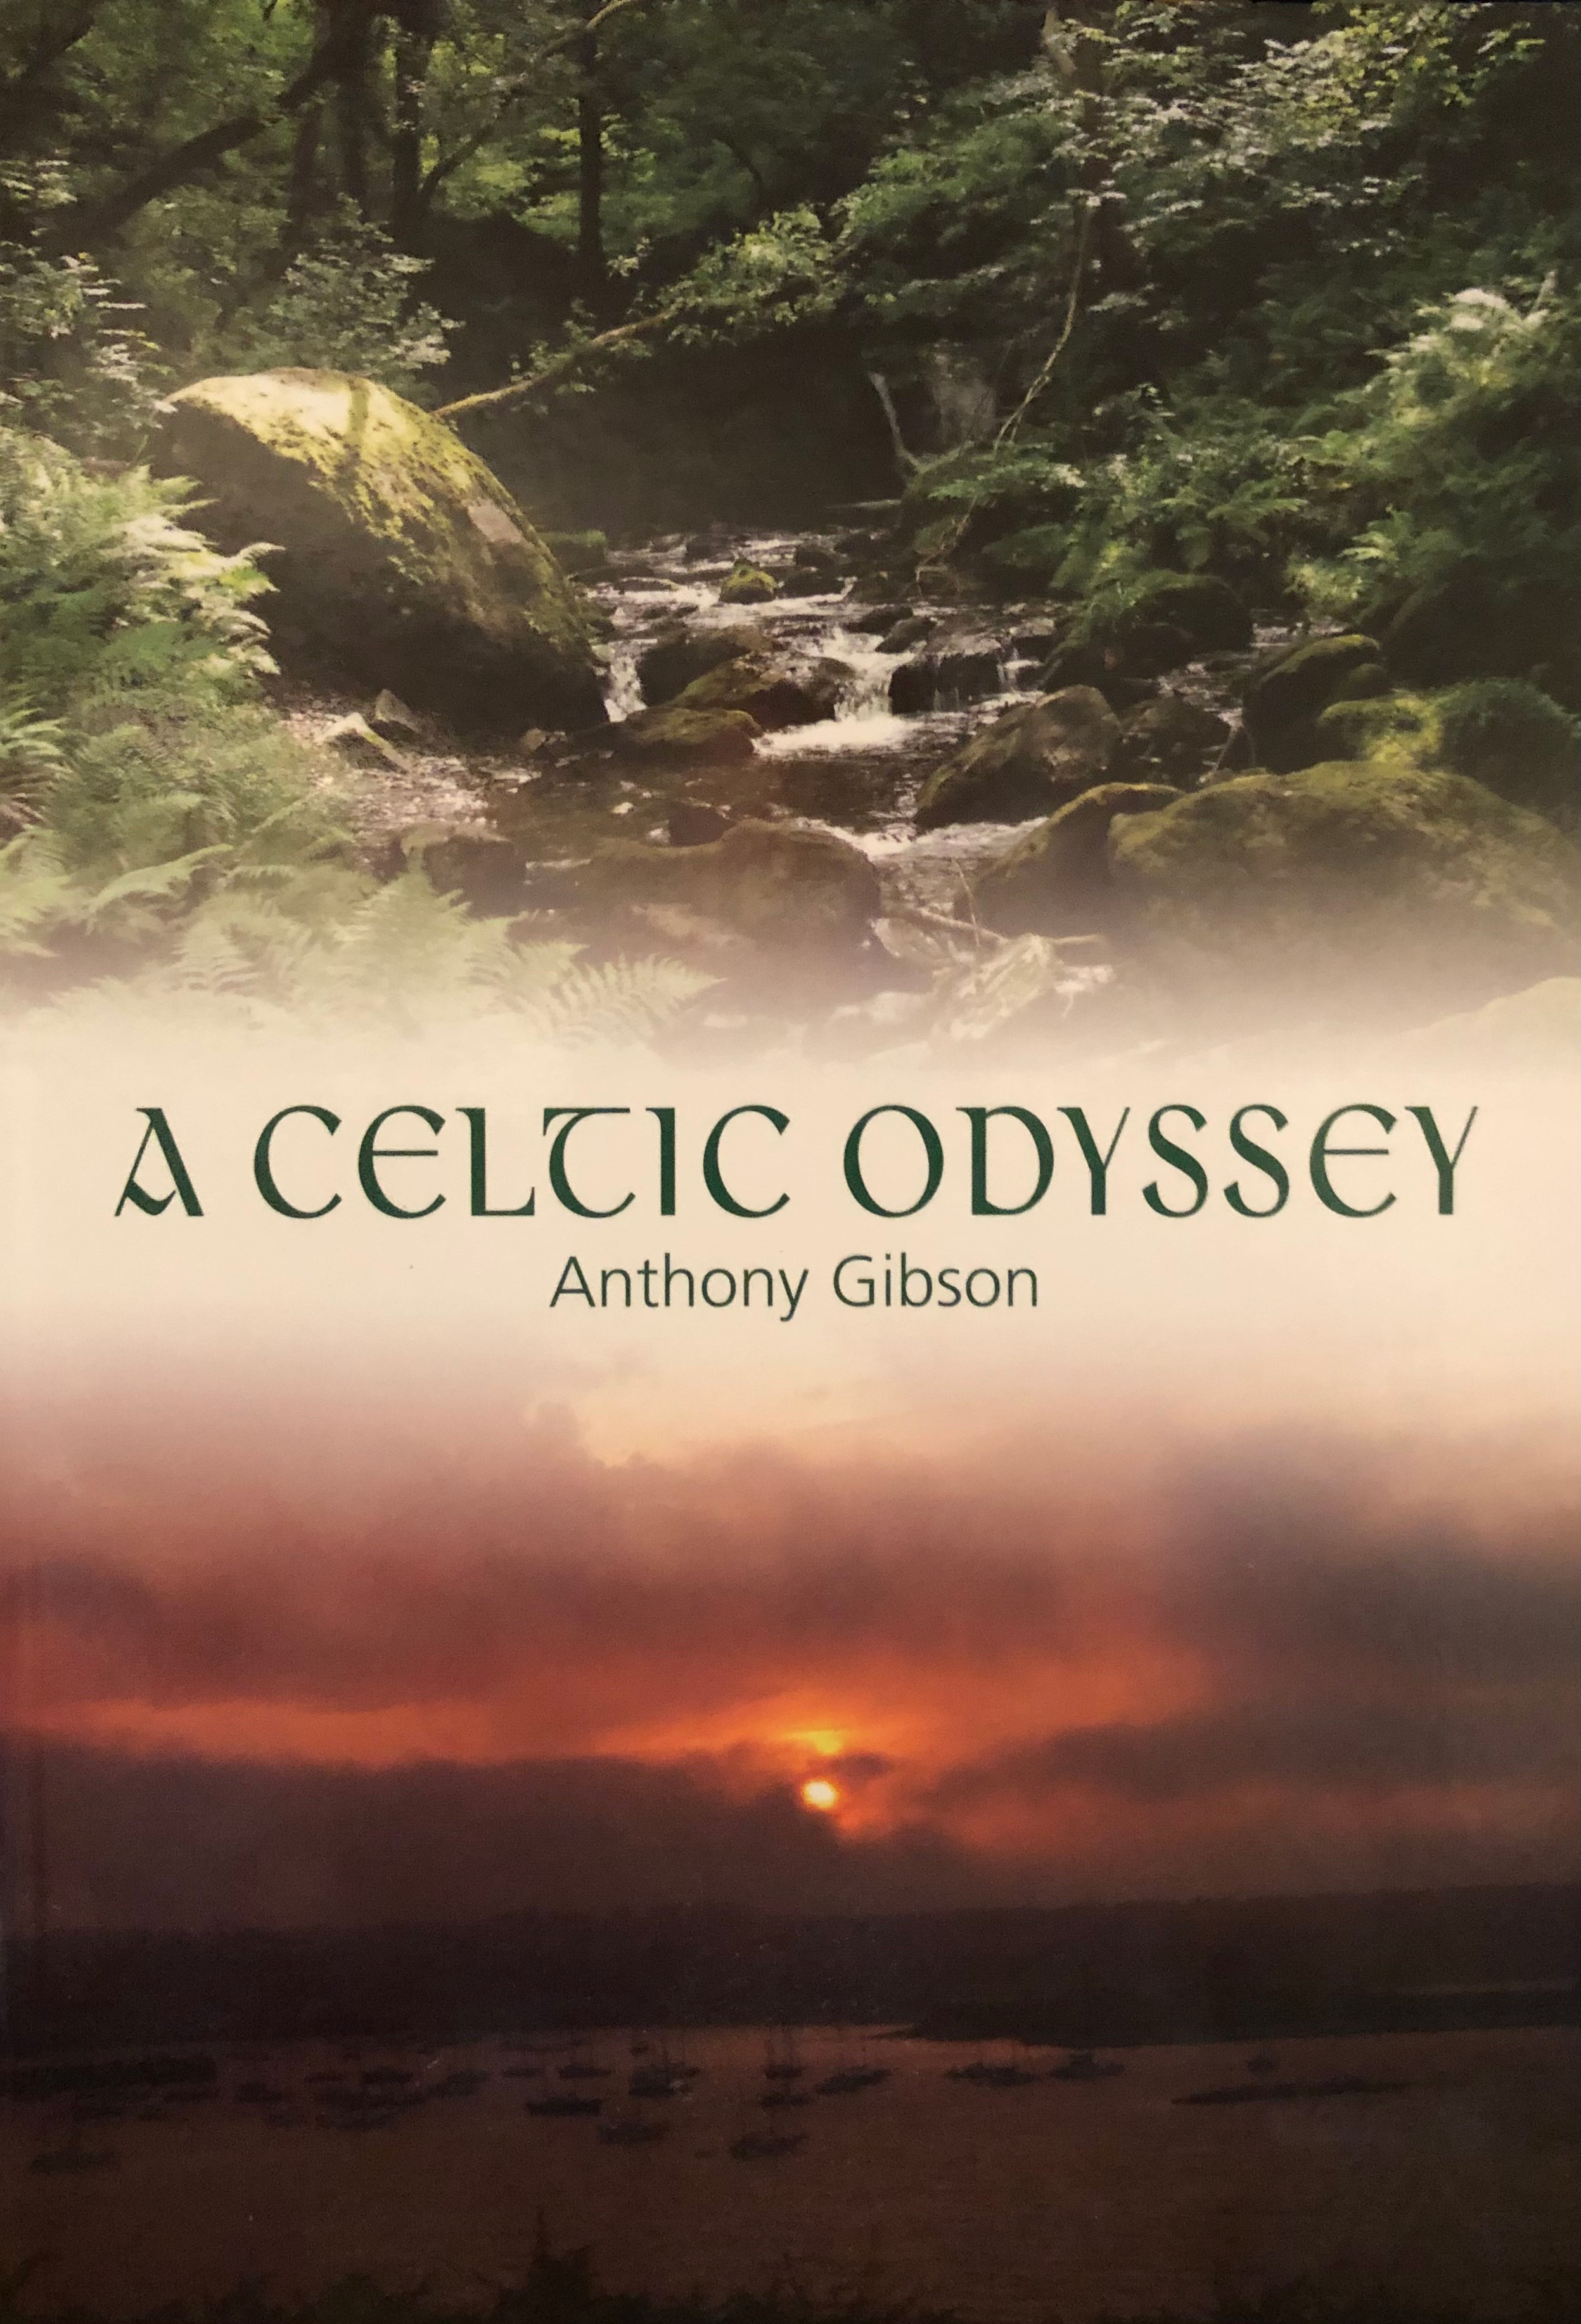 A Celtic Odyssey